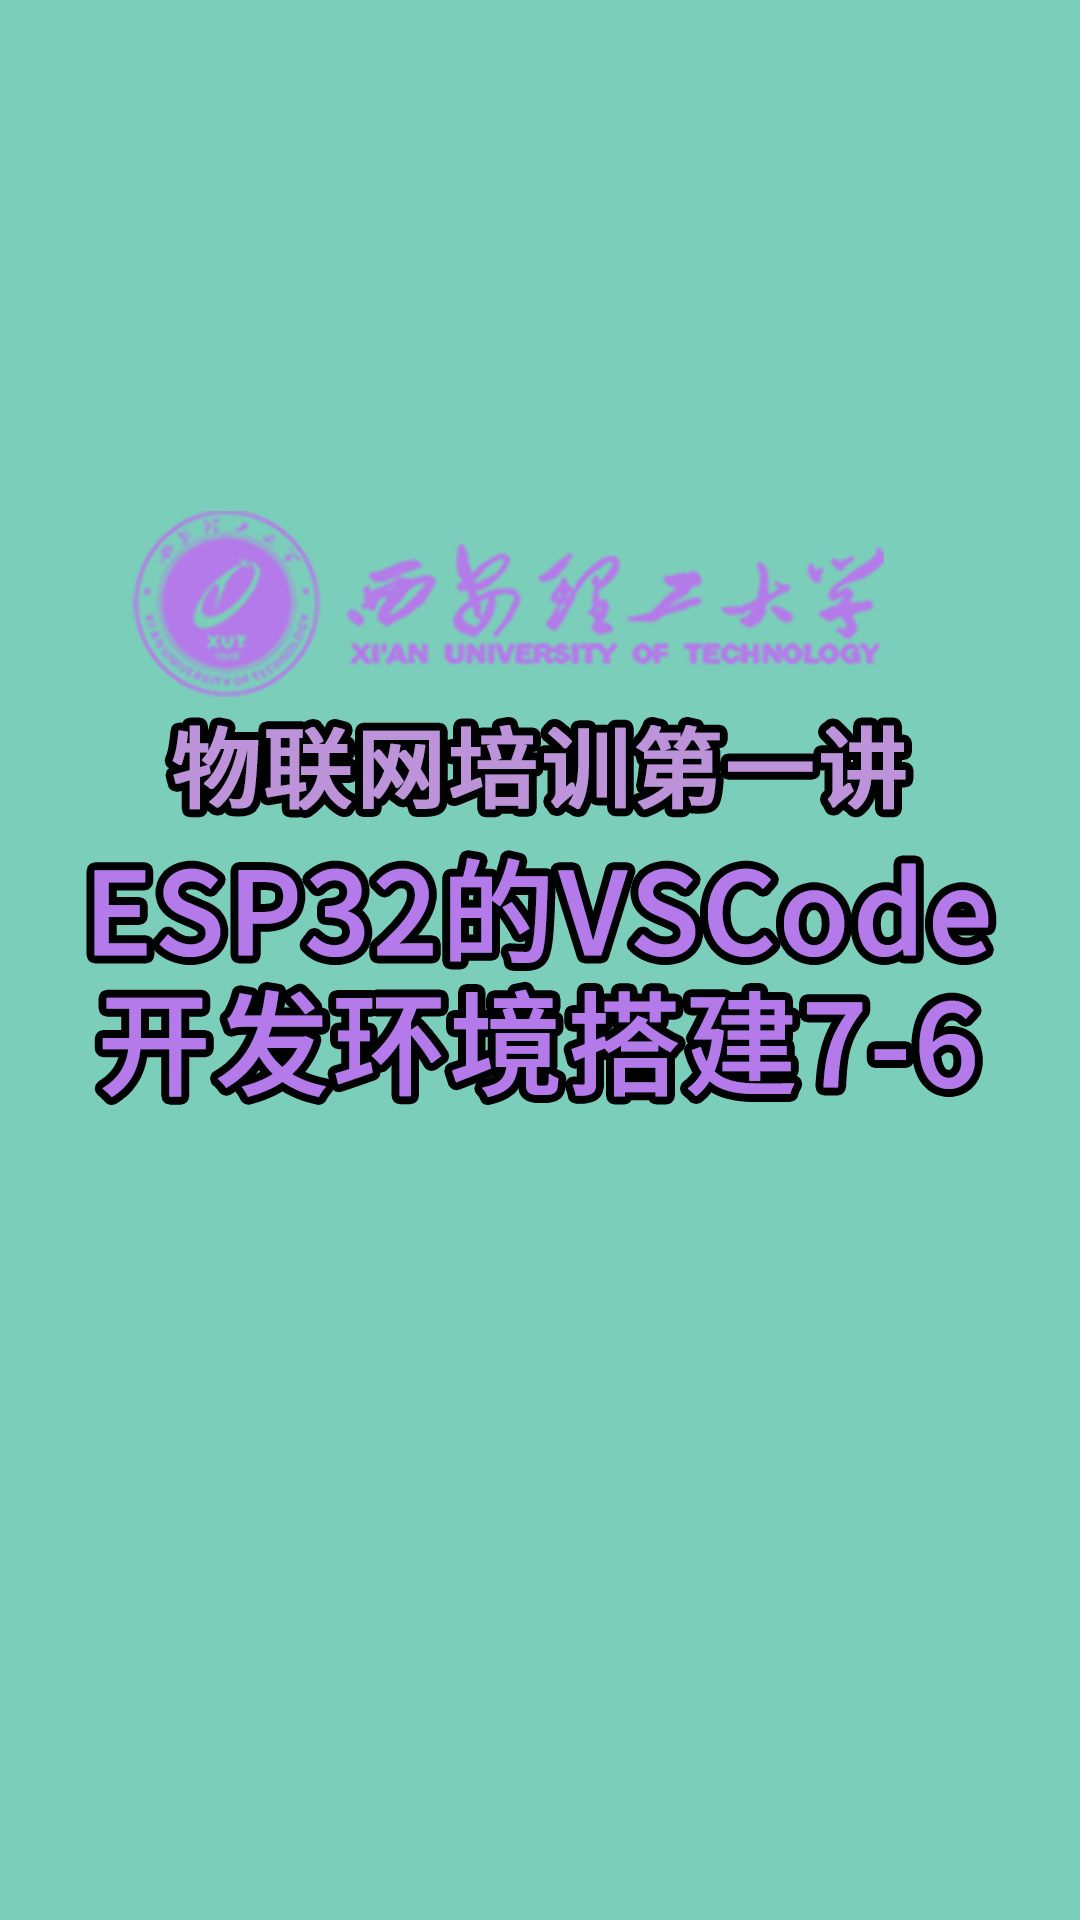 西安理工大學-物聯網培訓第一講-ESP32的VSCode開發環境搭建7-6#物聯網 